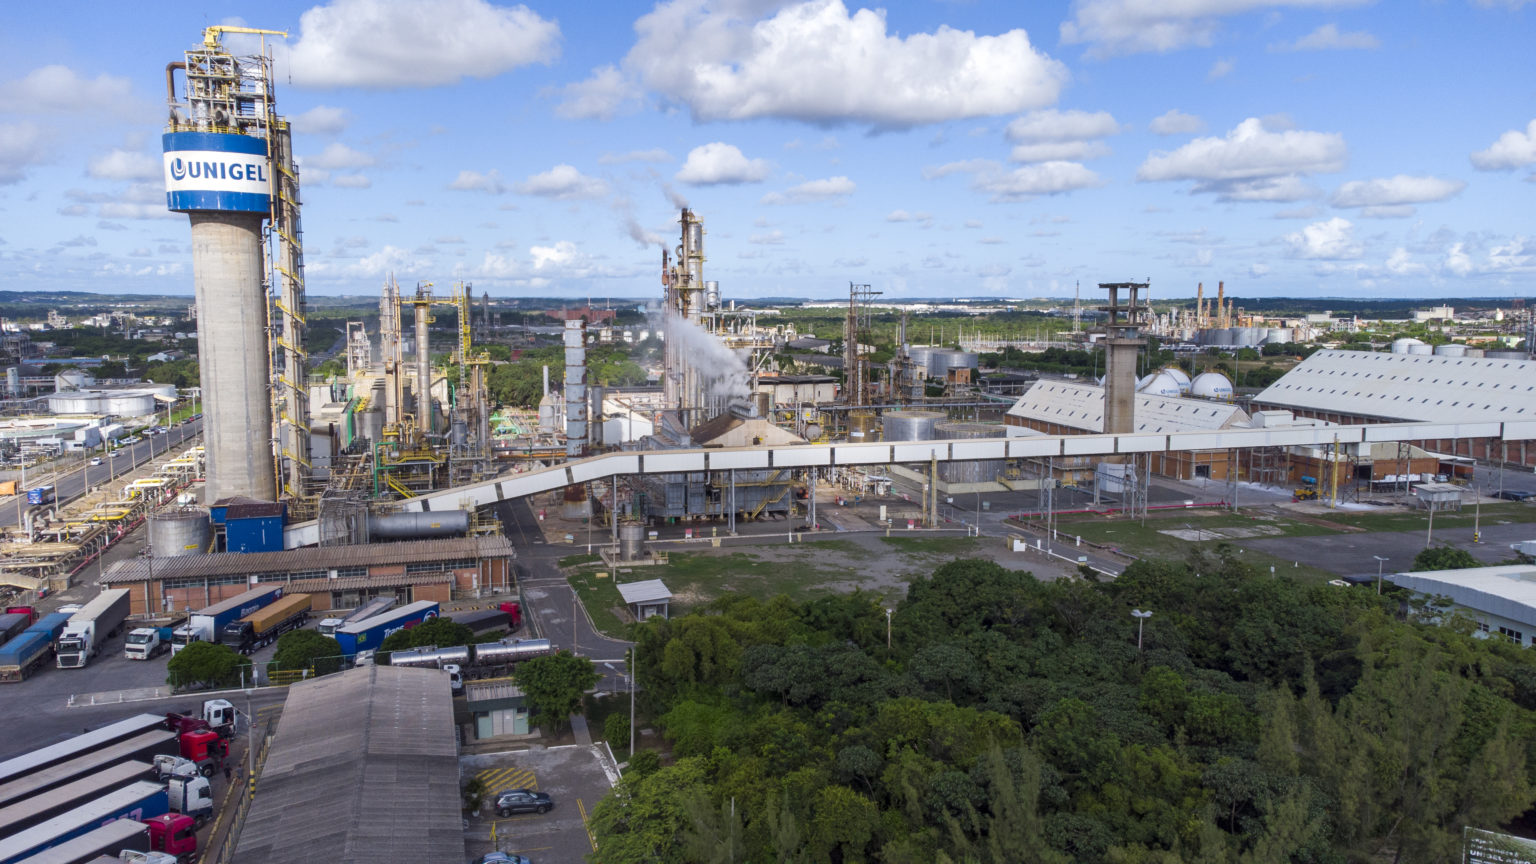 Vista das instalações em fábrica de fertilizantes (fafen) da Unigel (Foto: Divulgação)